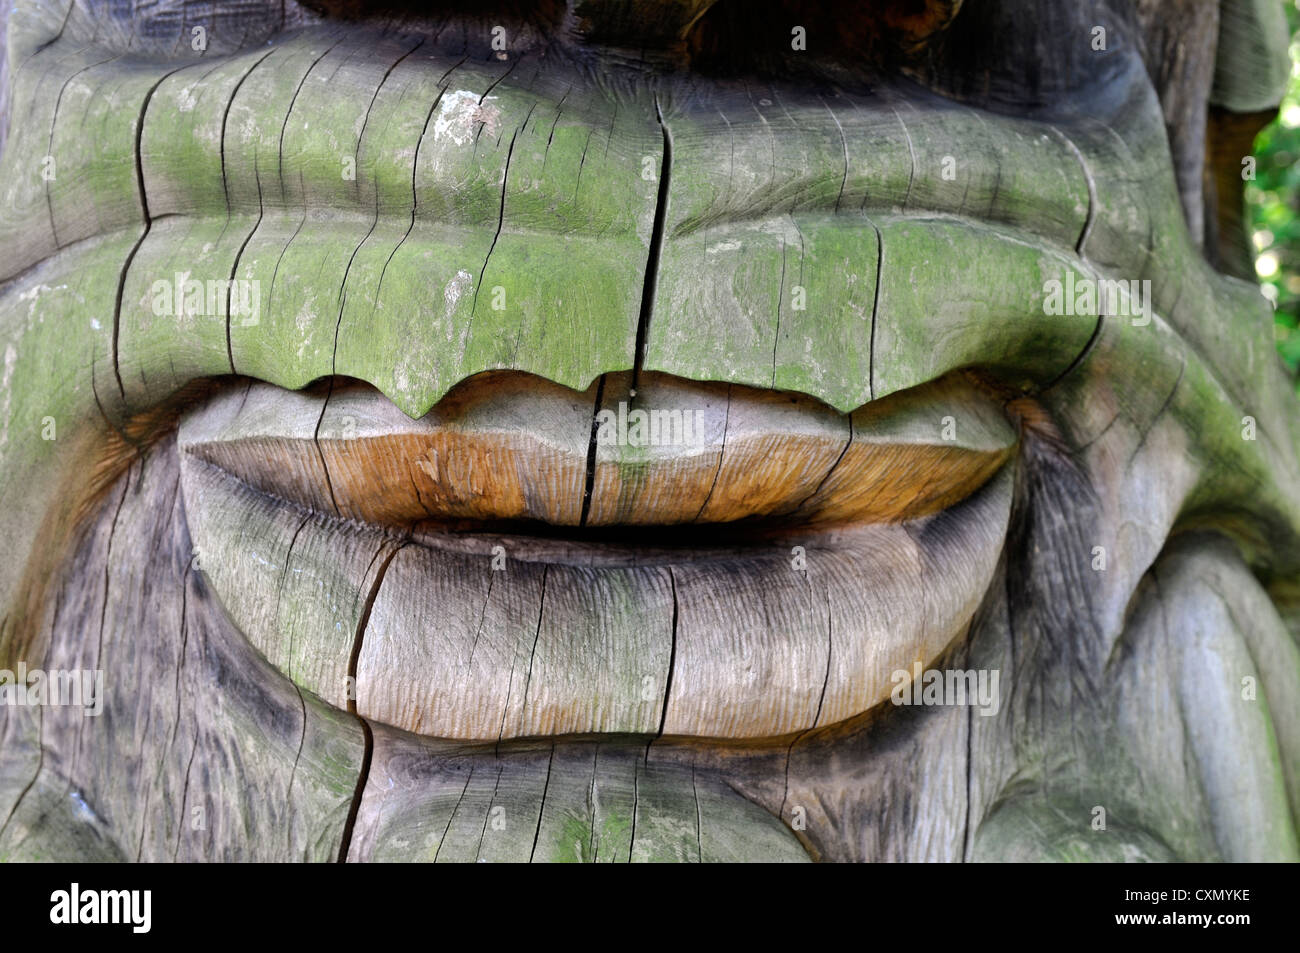 Ballintubbert geschnitzt House Gärten Stradbally Laois Irland Baumstamm Gesicht Abbildung Ents HNO Mensch Stockfoto